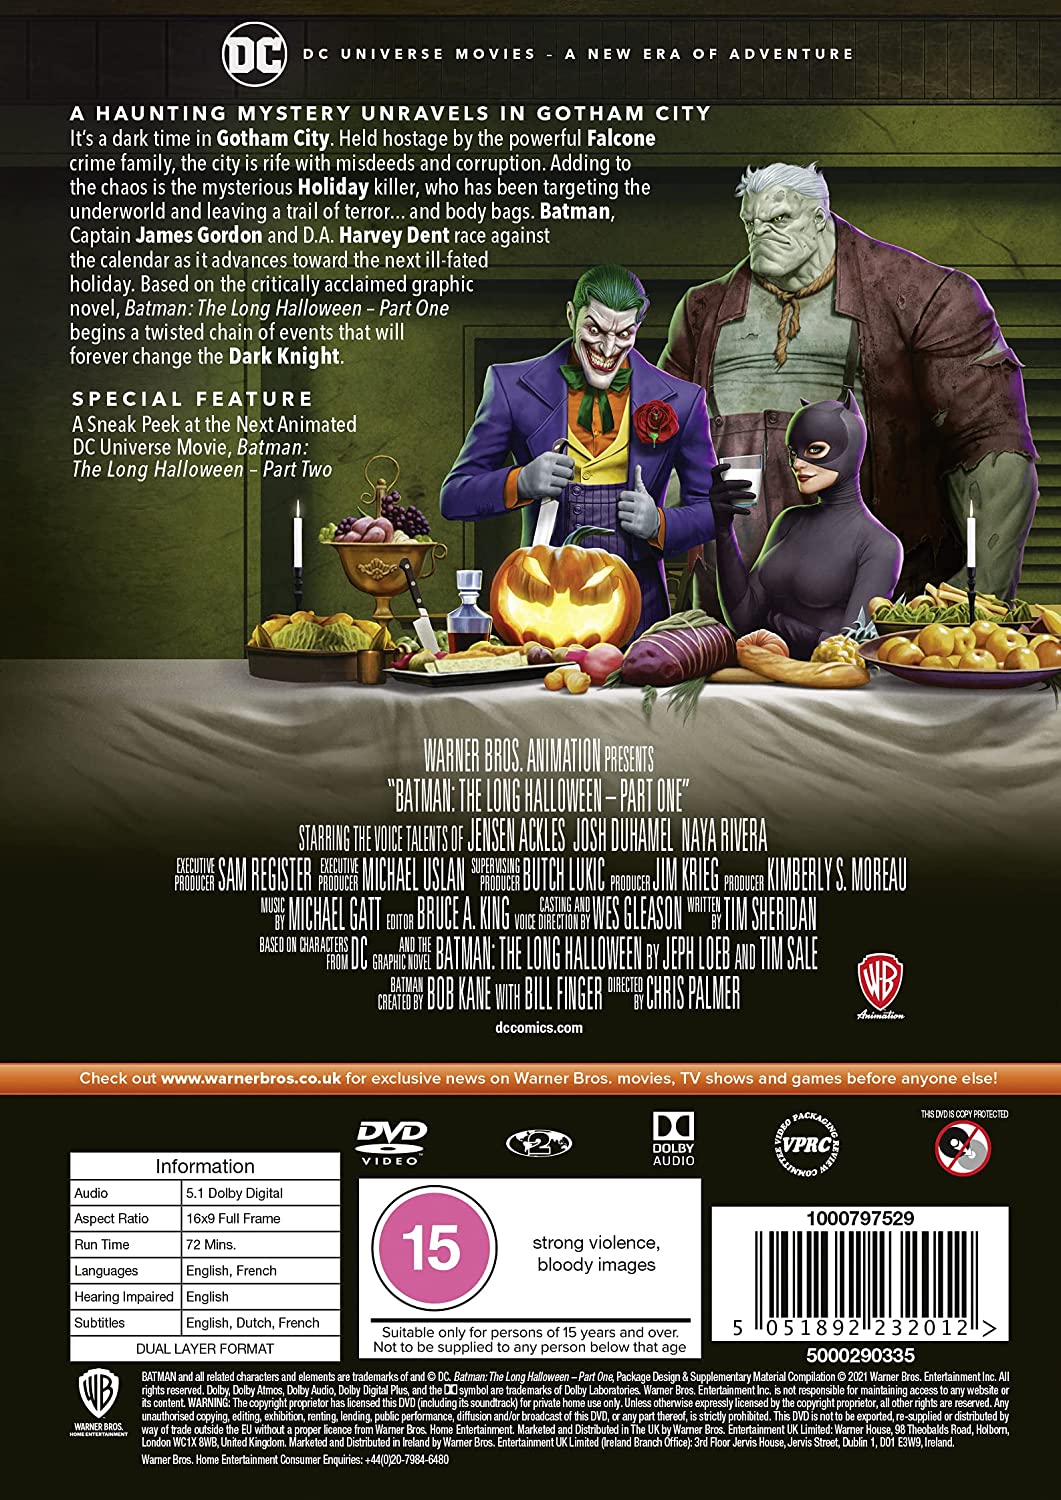 Batman: The Long Halloween Part 1 [2021] [DVD]